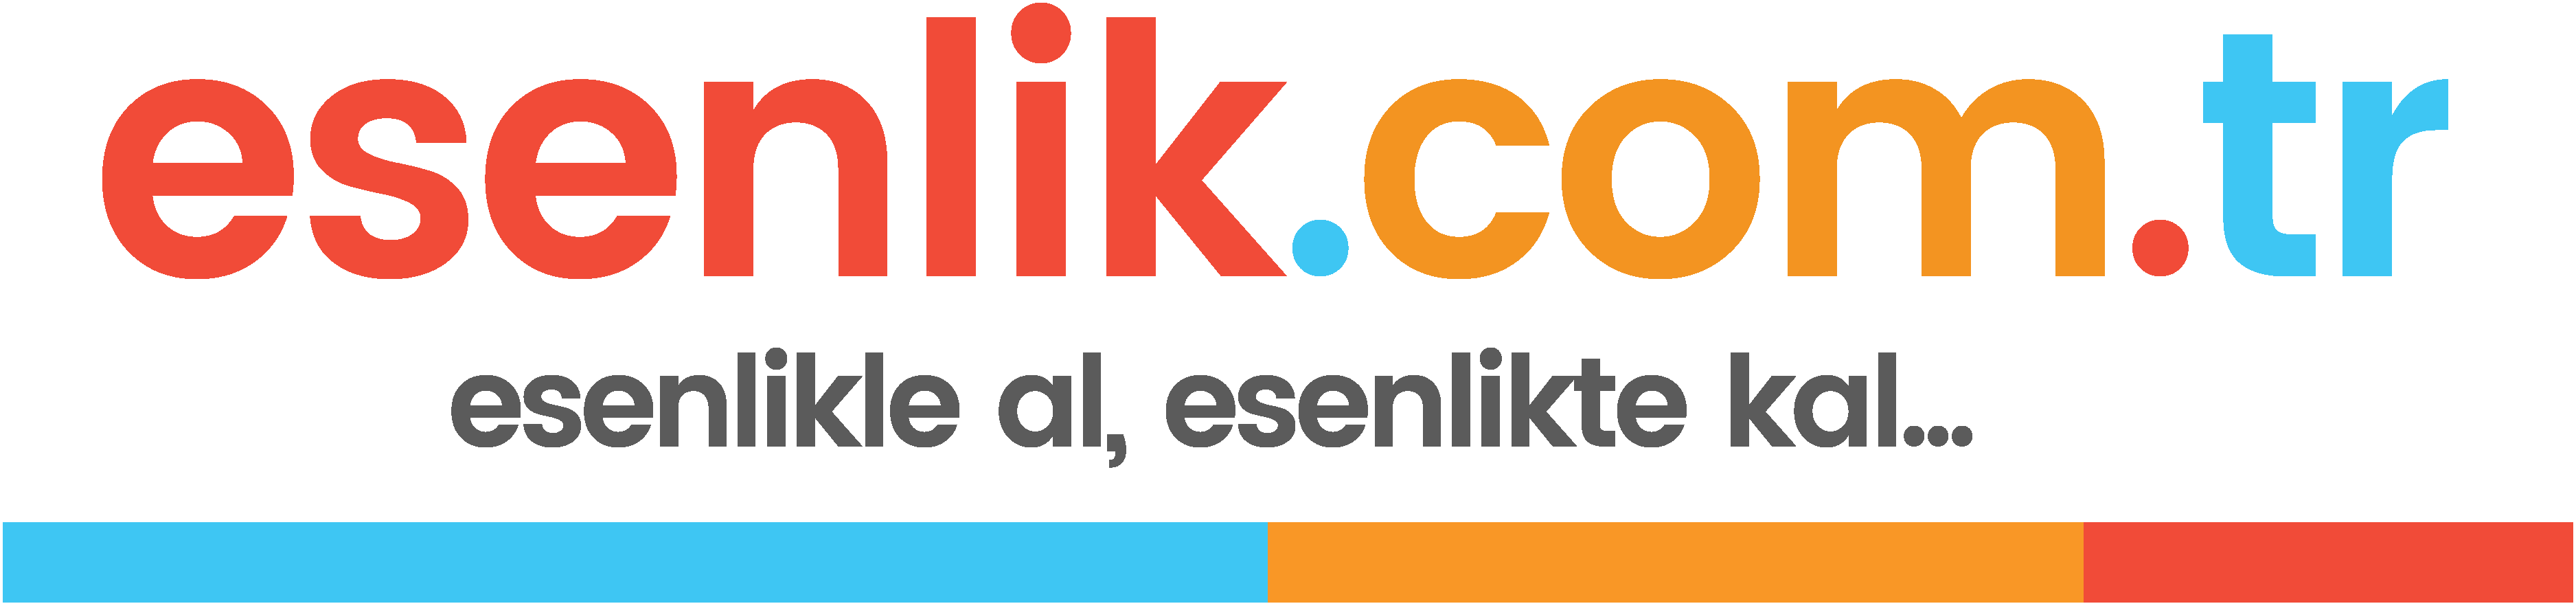 esenlik.com.tr